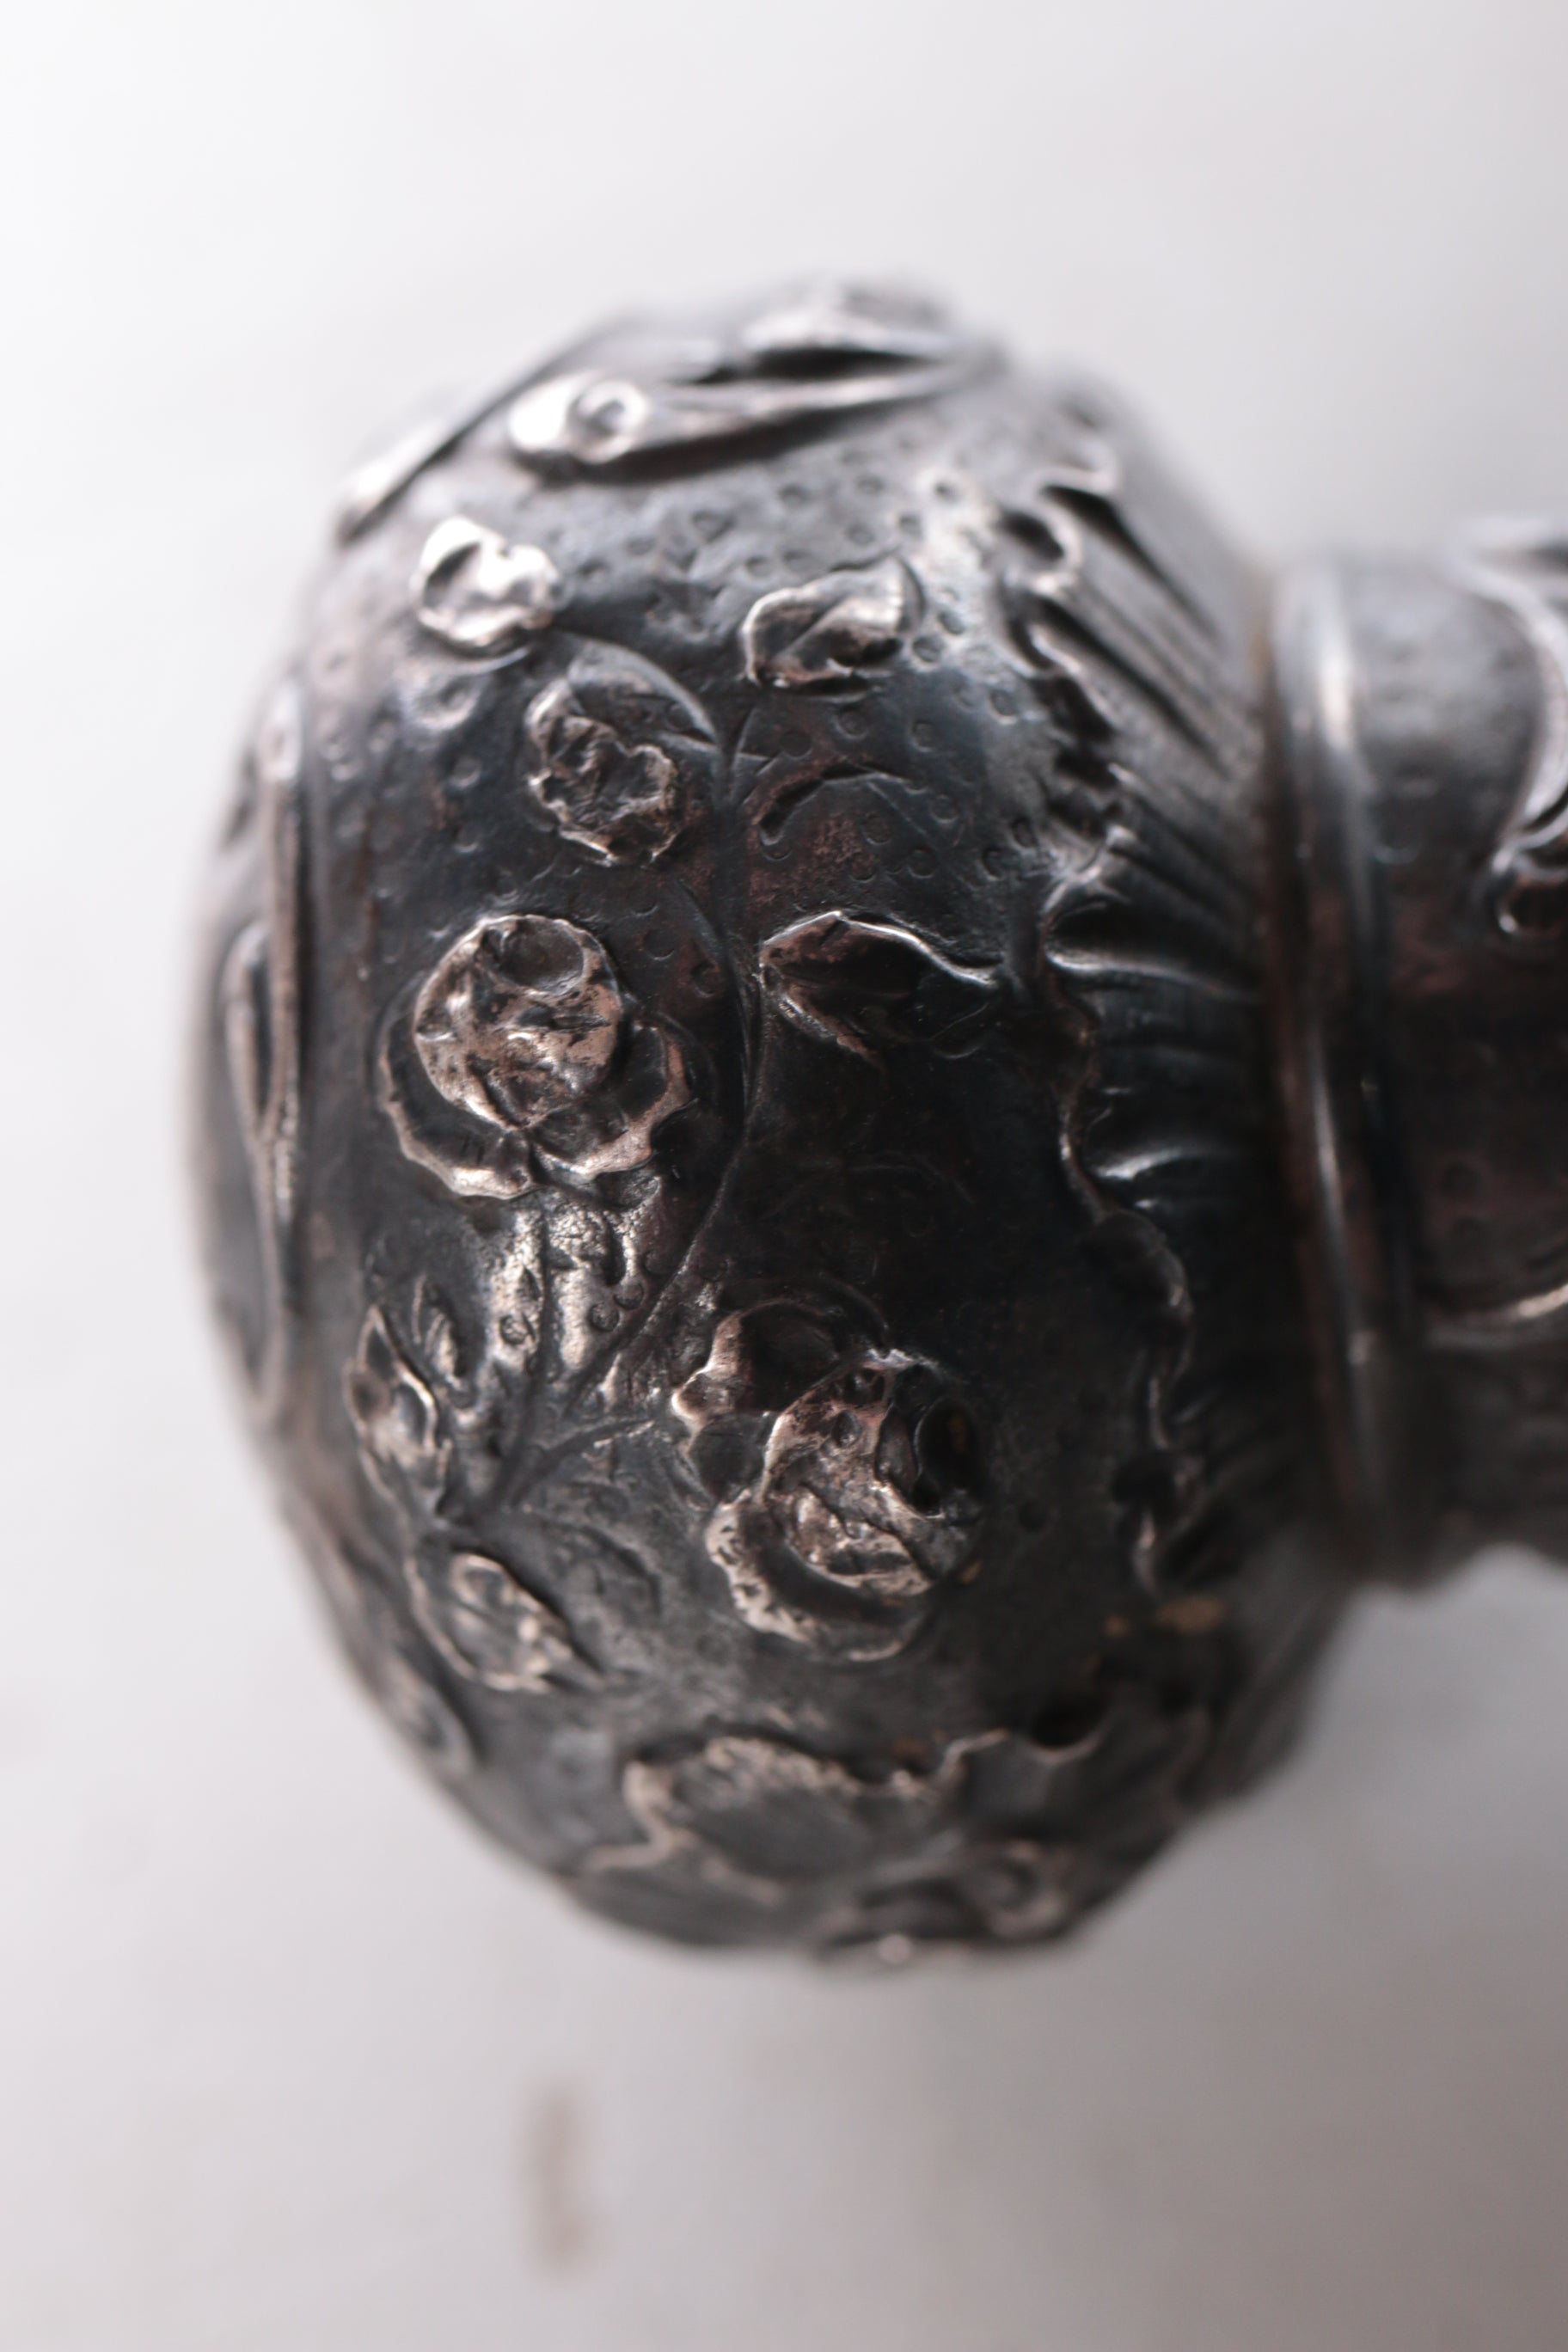 Antieke zwarte paraplu van zijde met zilveren handvat. detail handvat